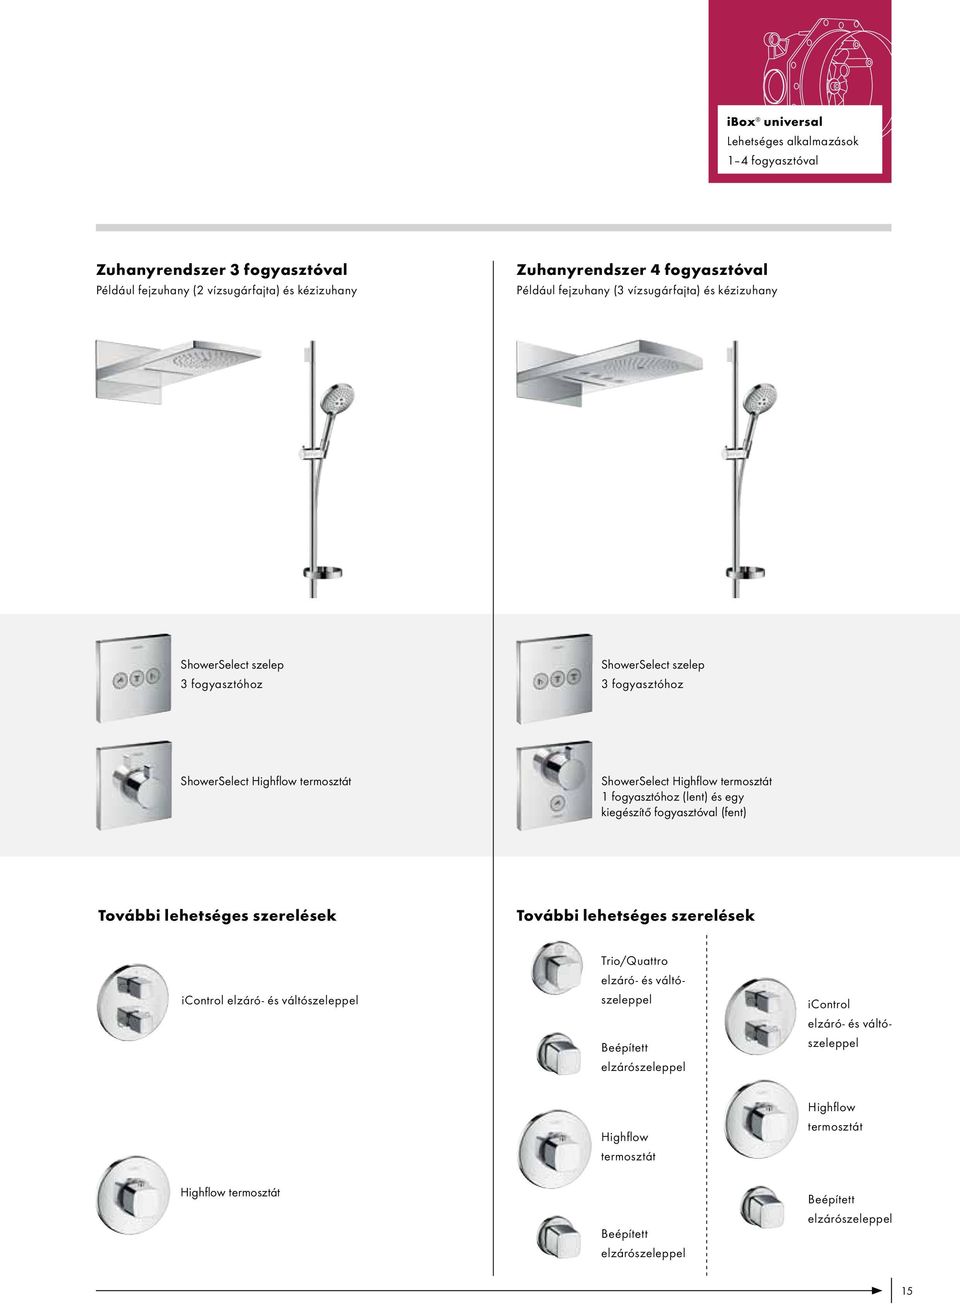 ShowerSelect Highflow termosztát 1 fogyasztóhoz (lent) és egy kiegészítő fogyasztóval (fent) További lehetséges szerelések További lehetséges szerelések